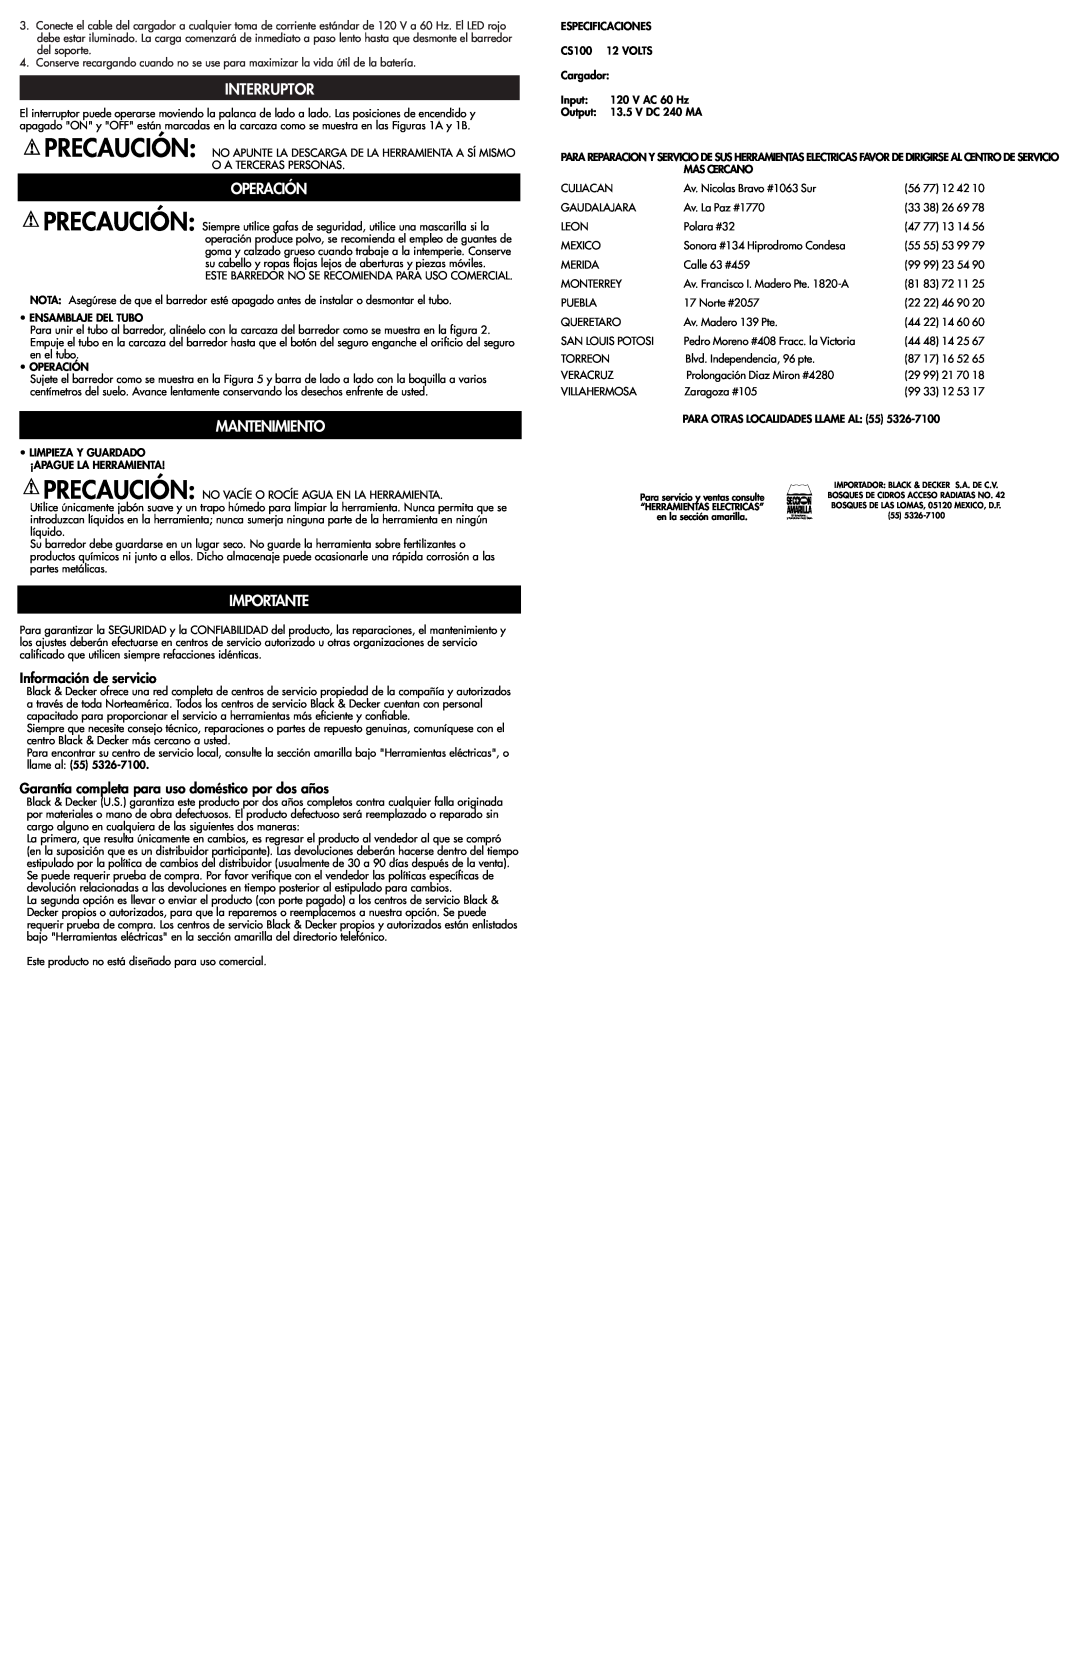 Black & Decker CS100 instruction manual Interruptor, Operación, Mantenimiento, Importante, Información de servicio 